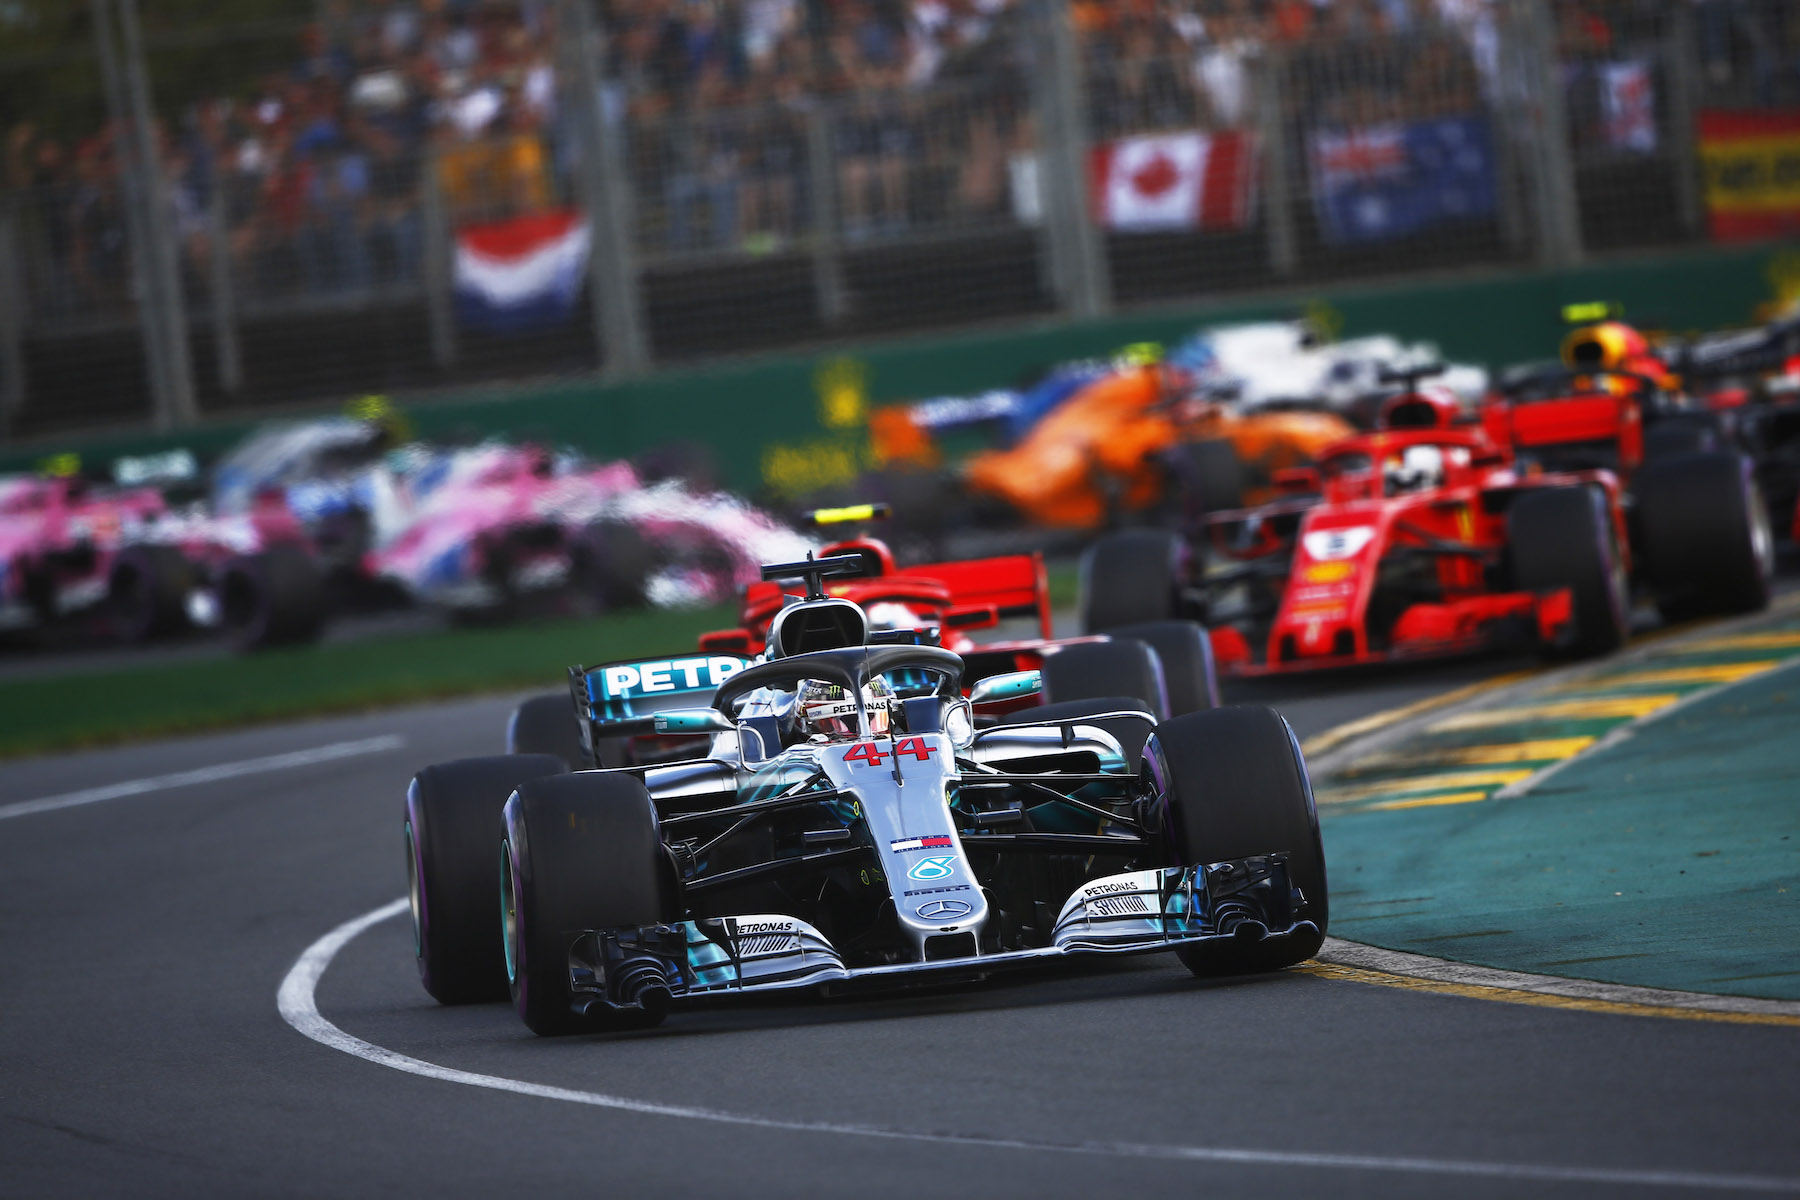 9 - Australian Grand Prix start